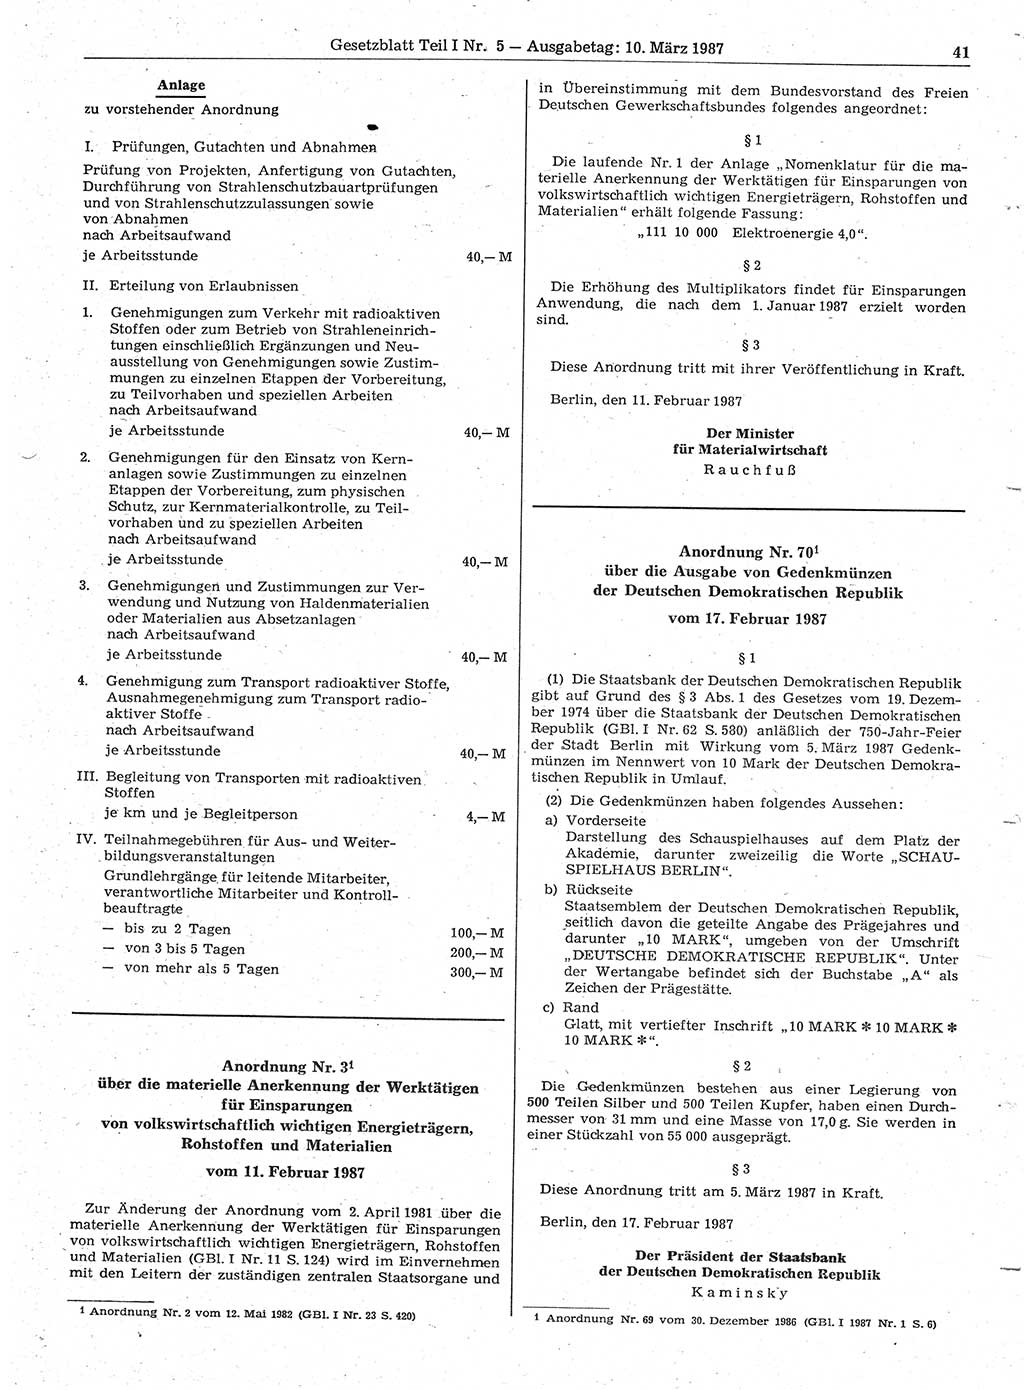 Gesetzblatt (GBl.) der Deutschen Demokratischen Republik (DDR) Teil Ⅰ 1987, Seite 41 (GBl. DDR Ⅰ 1987, S. 41)